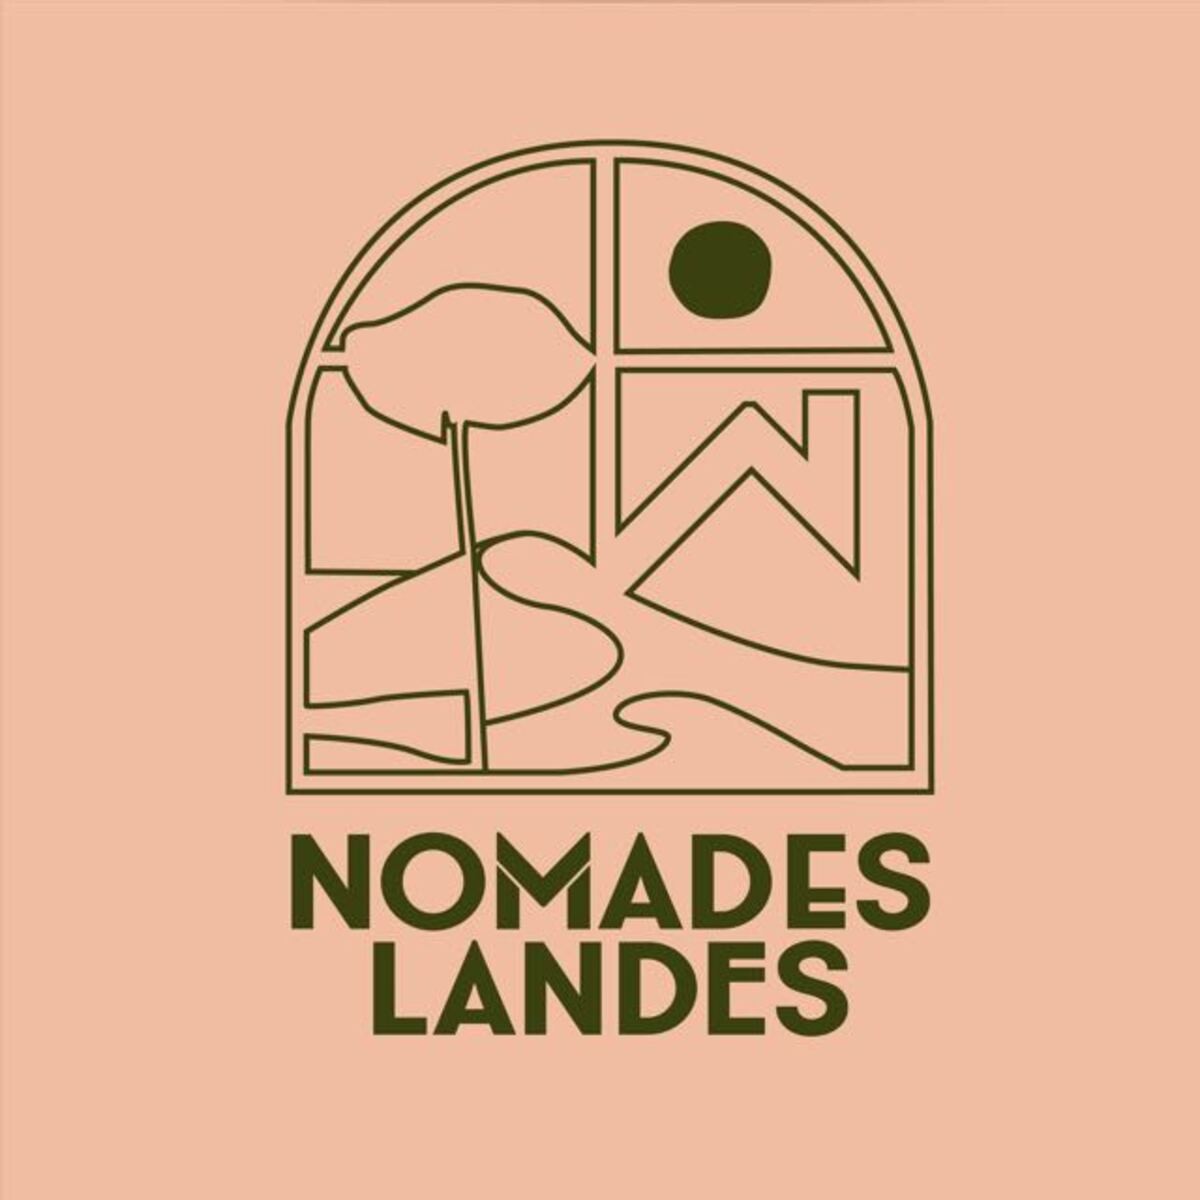 Nomades Landes